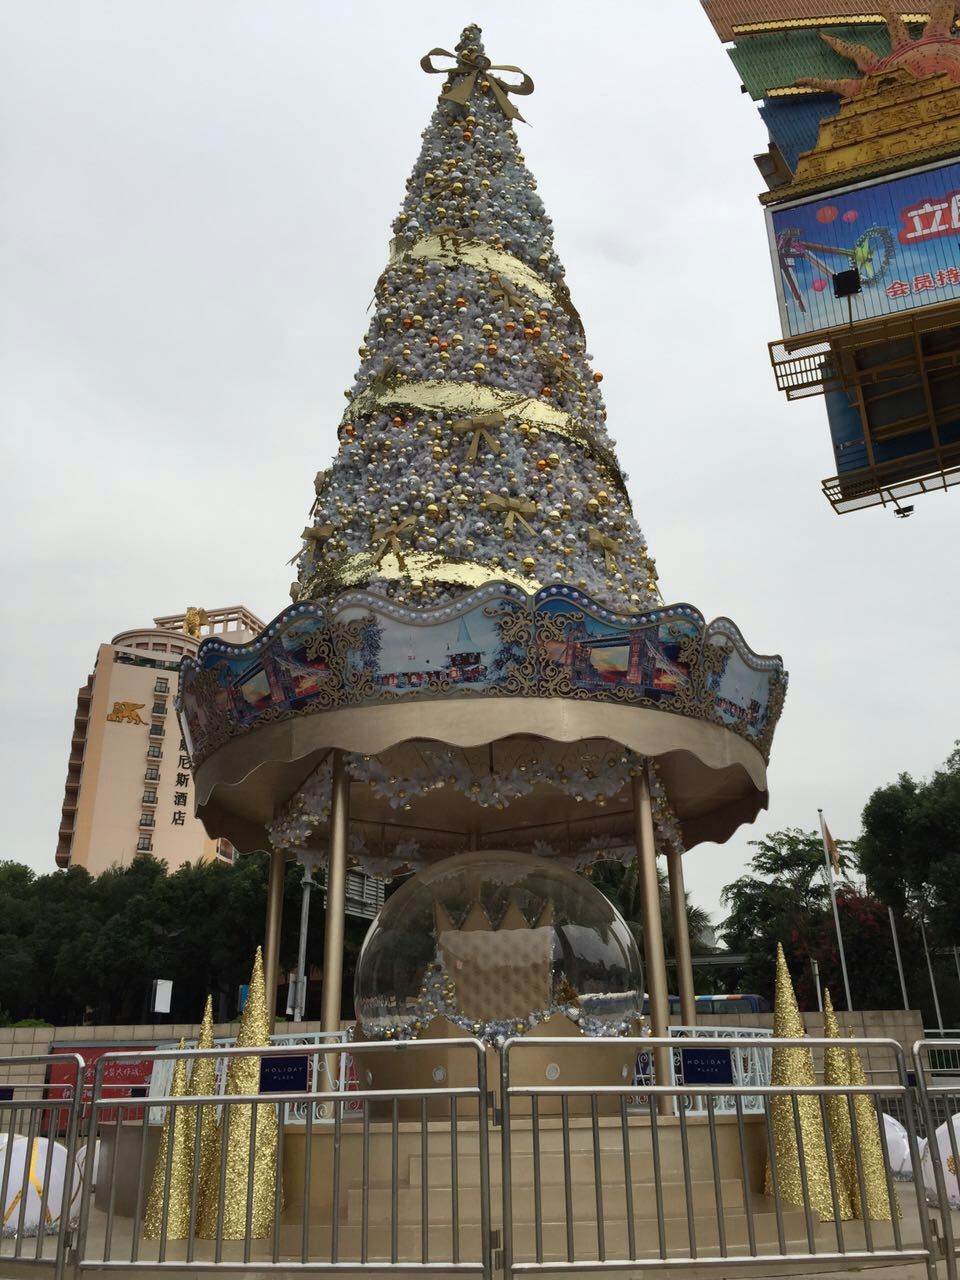 国庆 国庆灯展 国庆灯展造型 制作大型圣诞树  新年彩灯设计图片